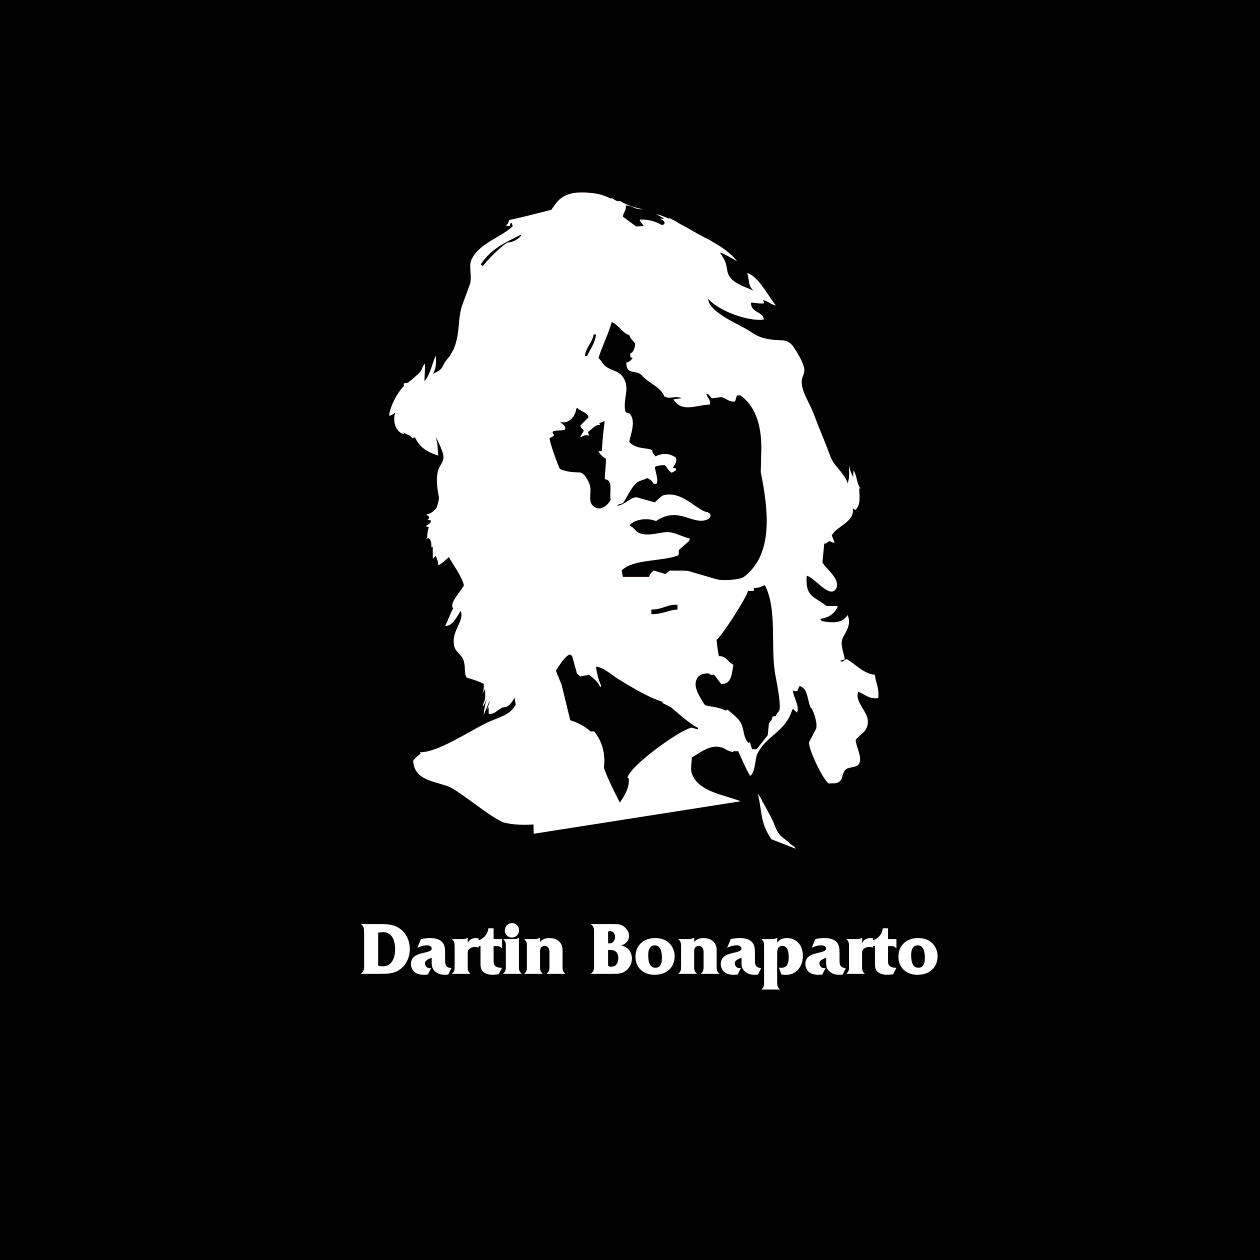 DARTIN BONAPARTO ブランドロゴ | ミームクリエイティブ株式会社